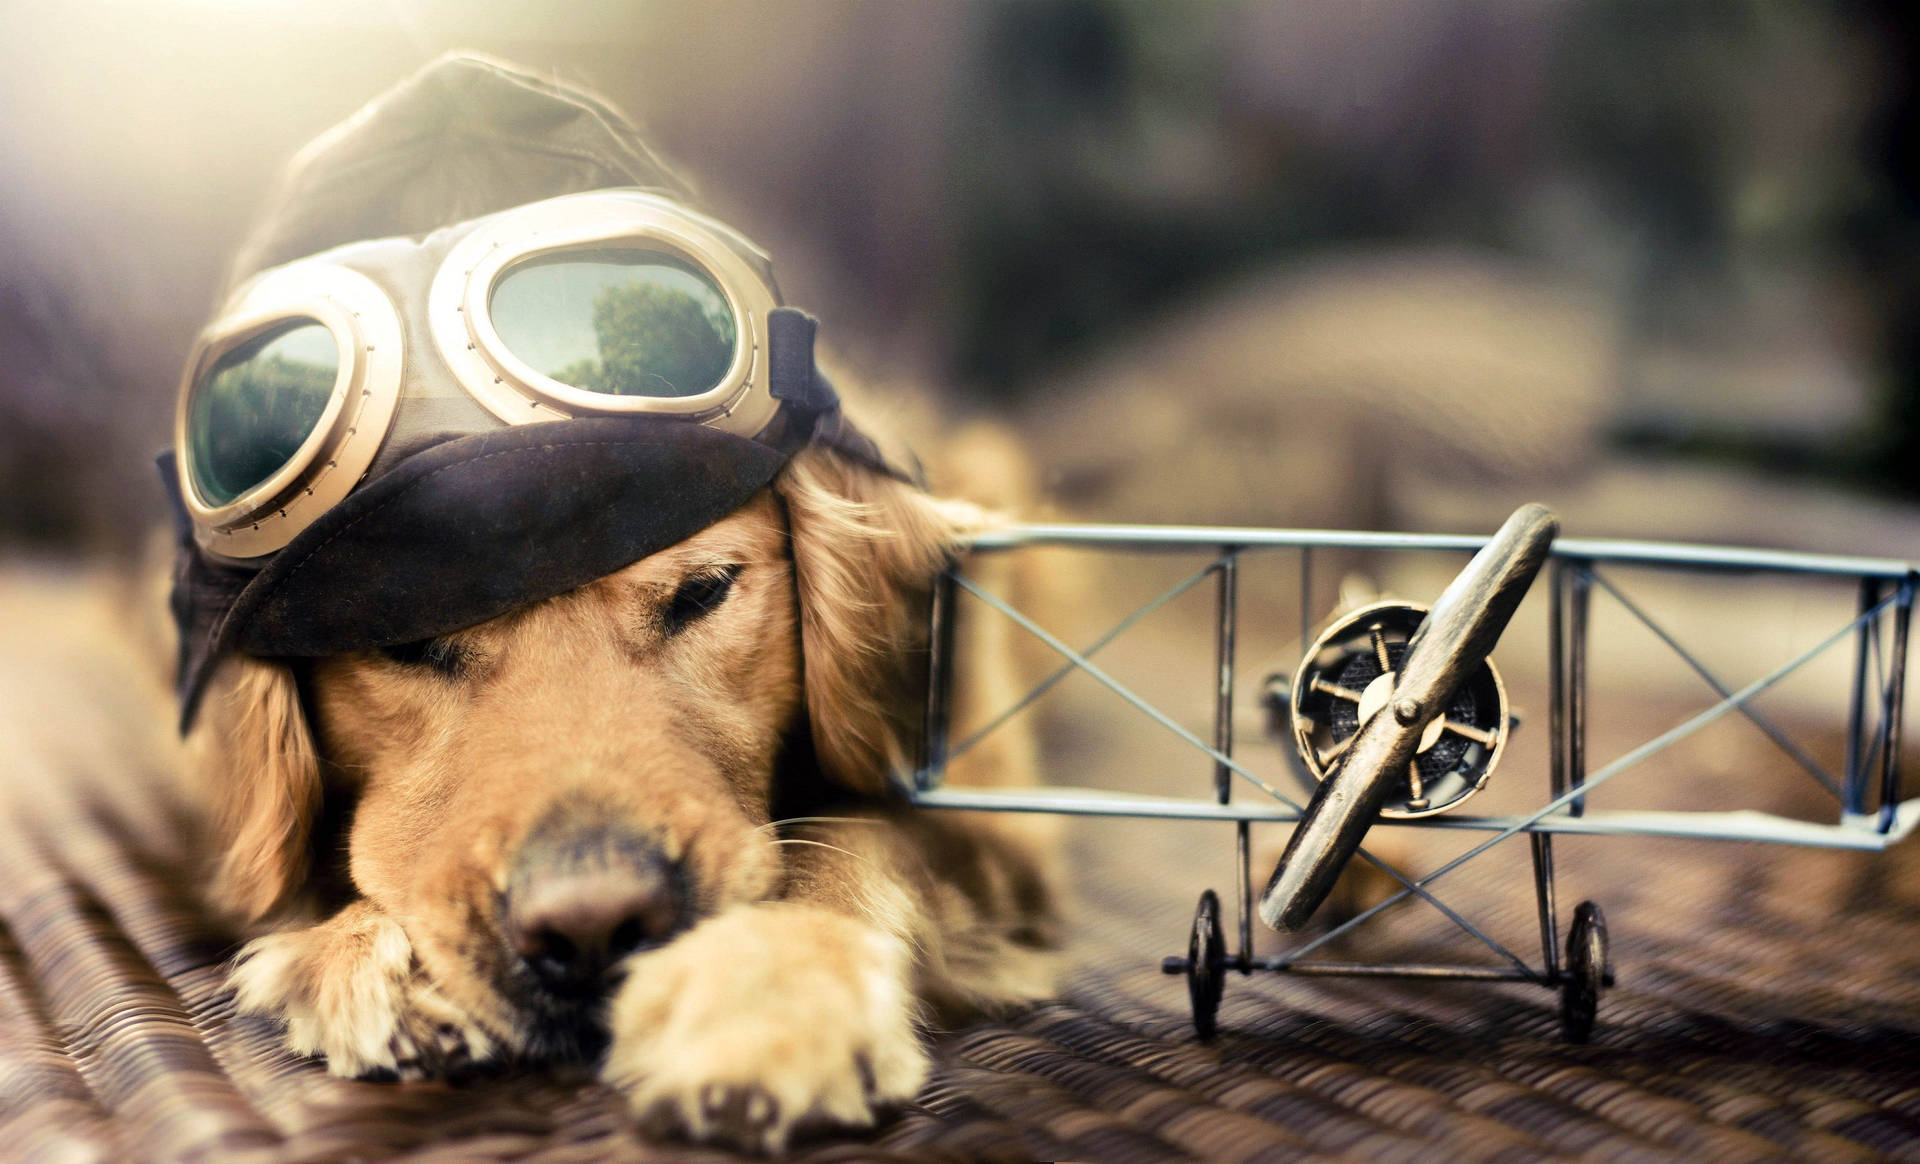 Cute Dog Bi-plane Toy Background